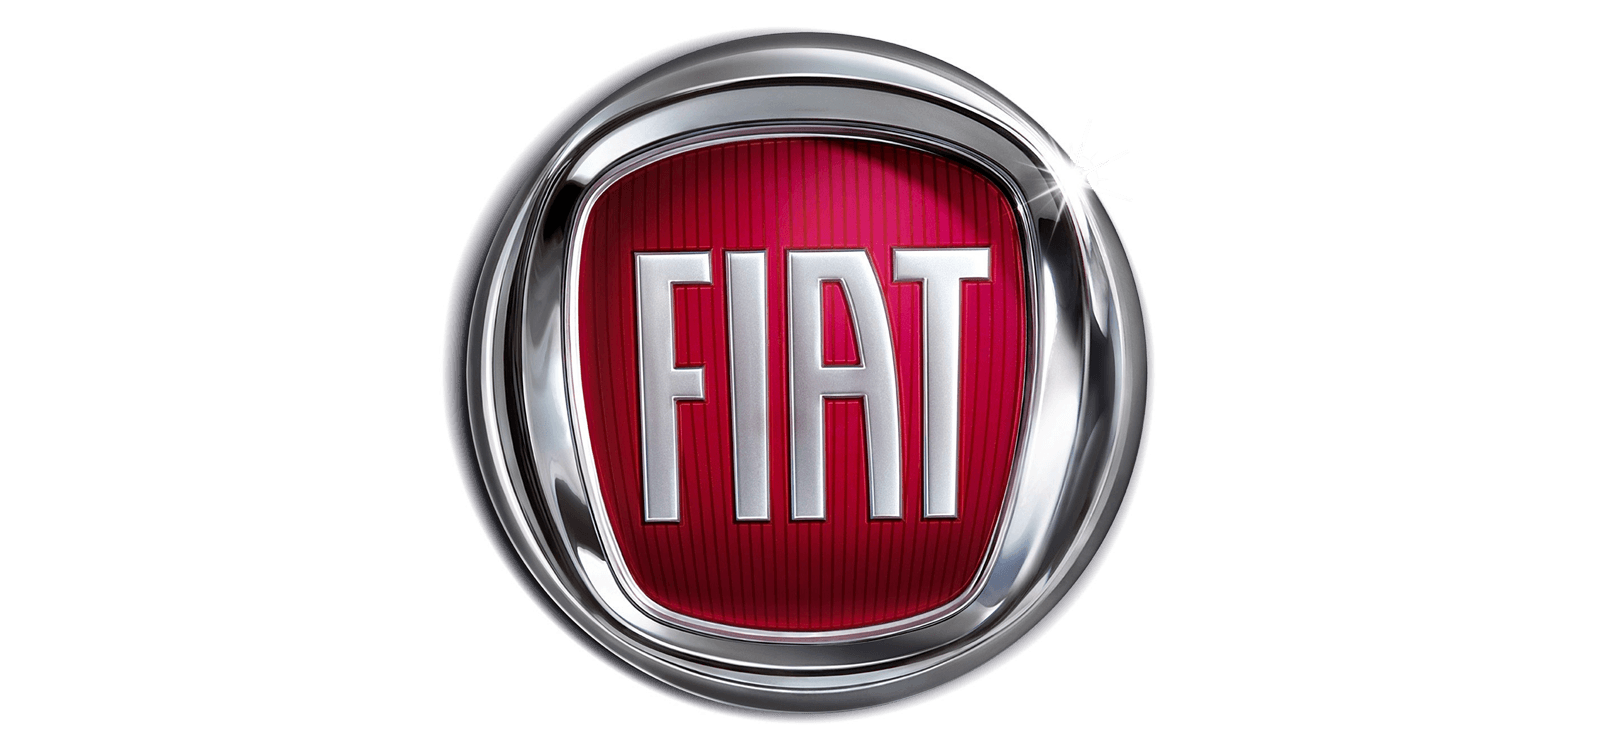 Le Logo - Le logo Fiat. Les marques de voitures